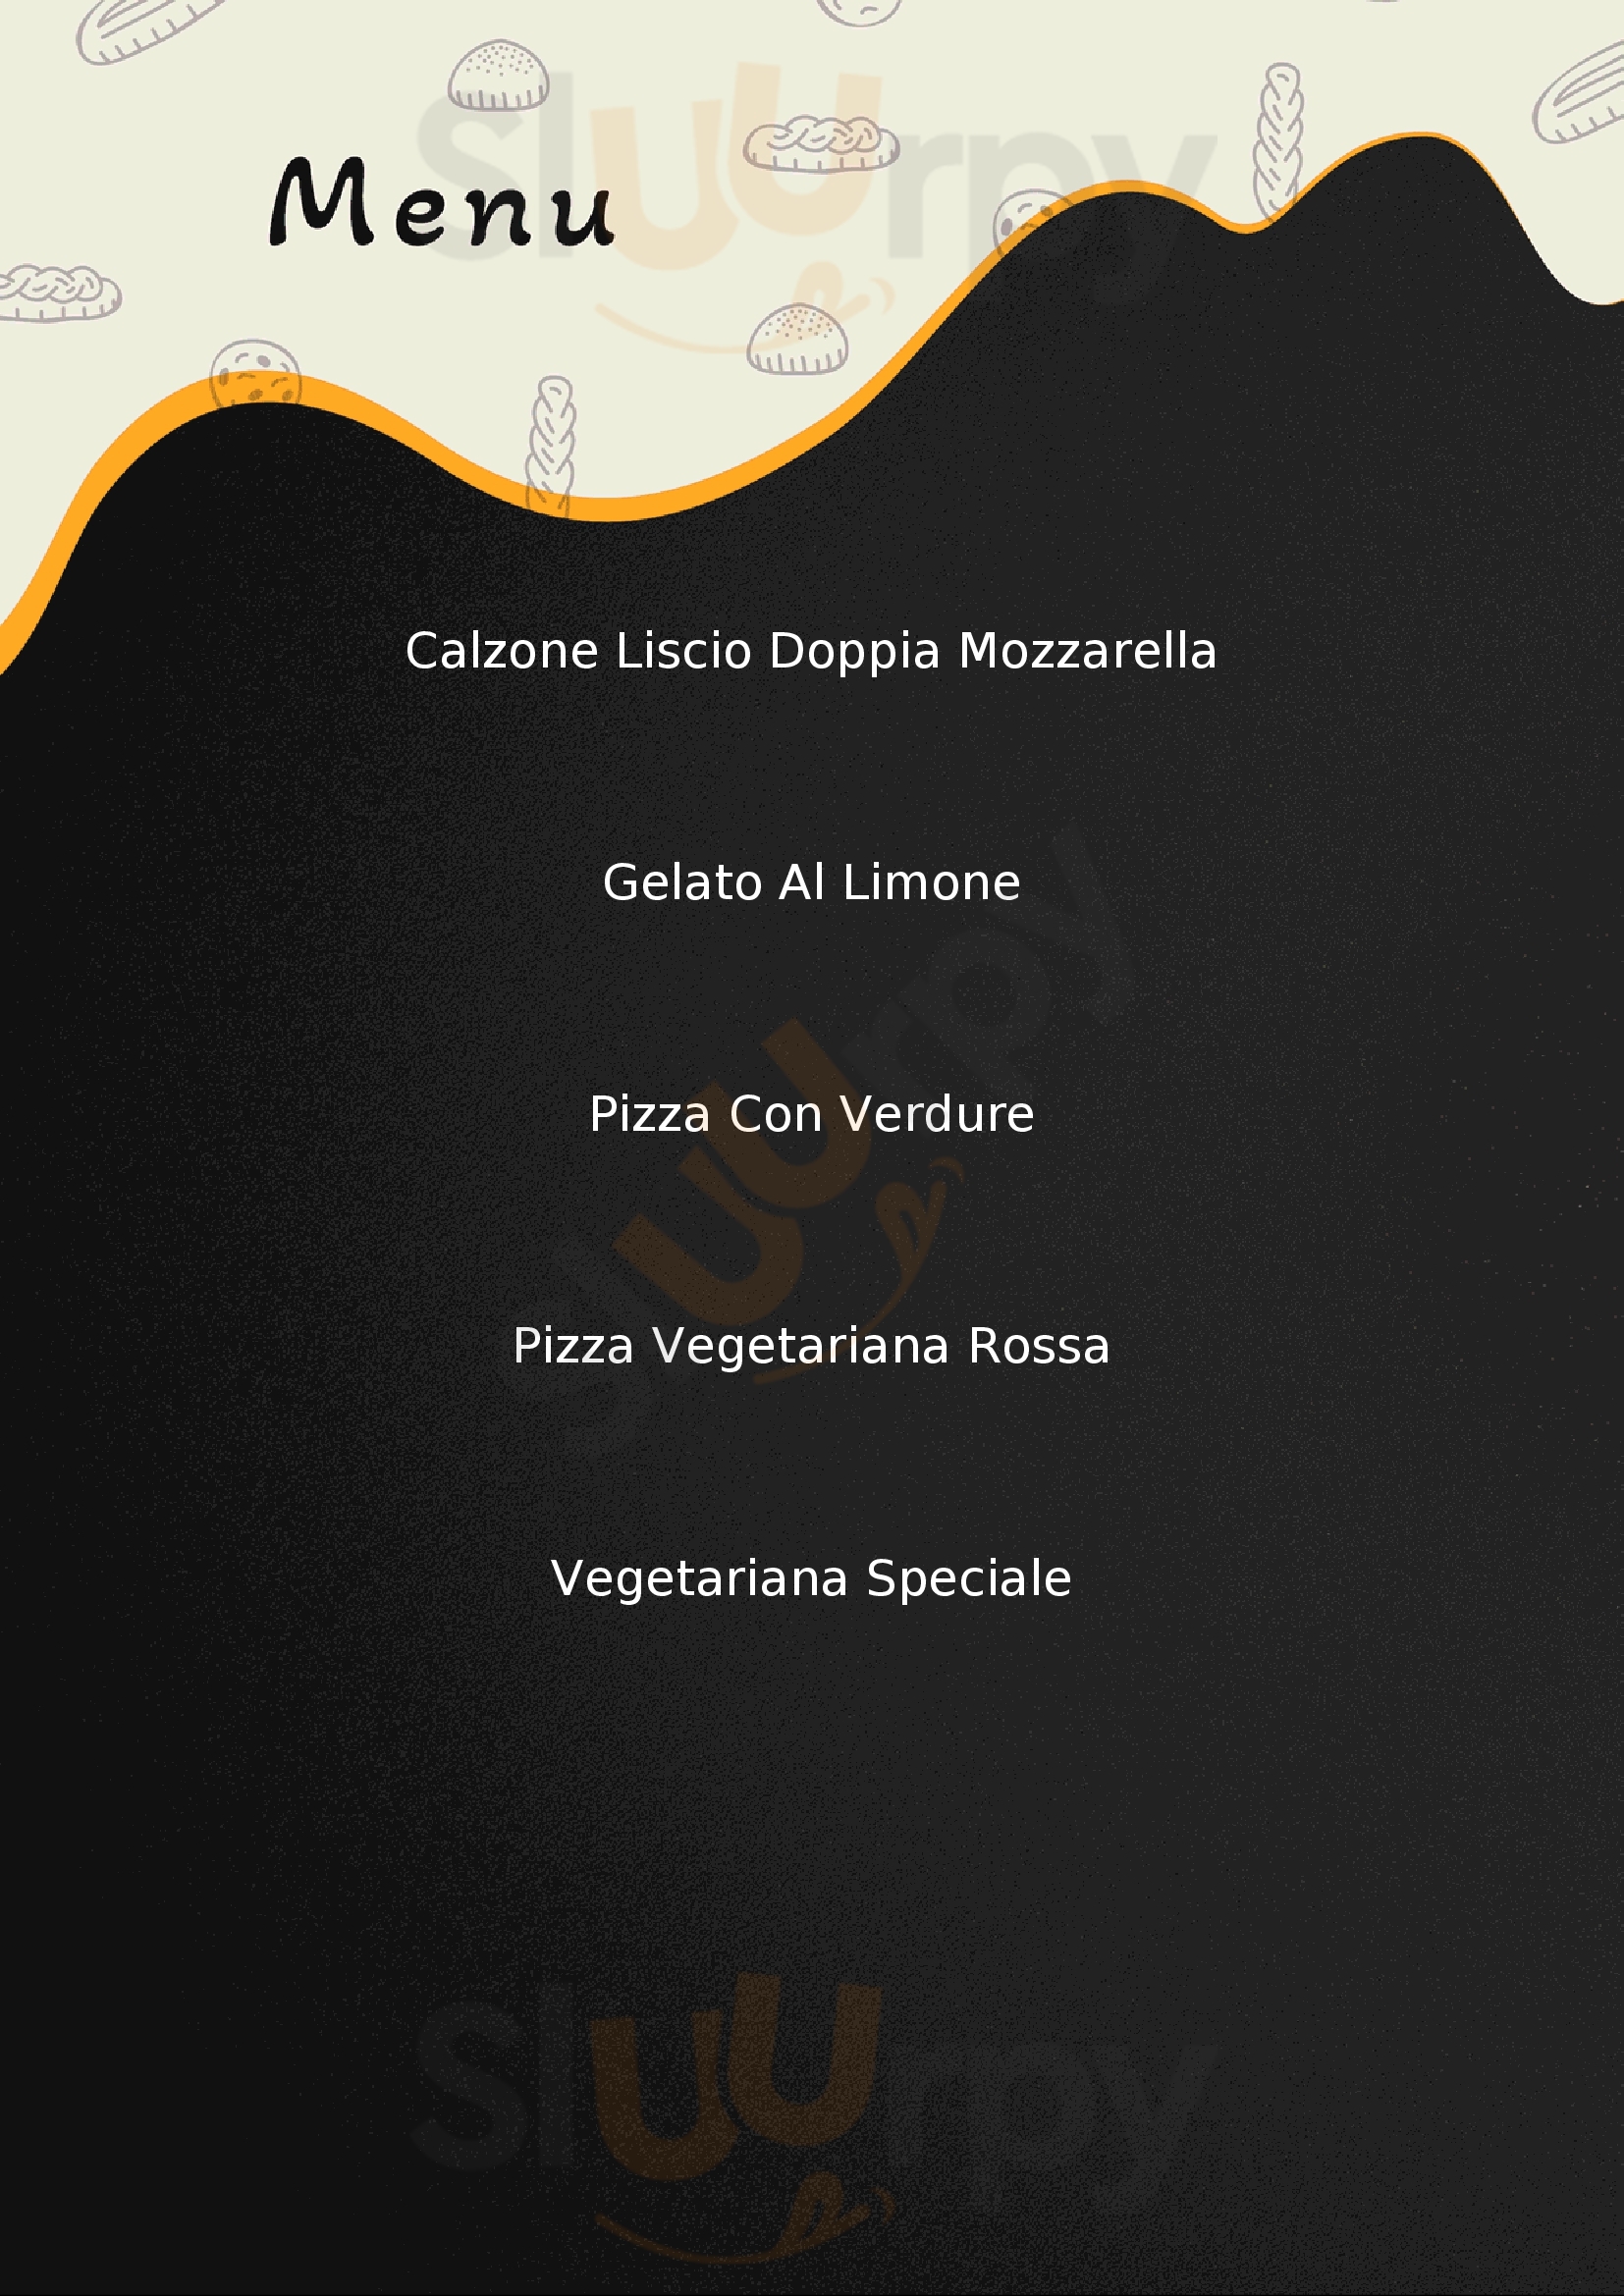 Pizzeria Vecchia Napoli Cantu menù 1 pagina